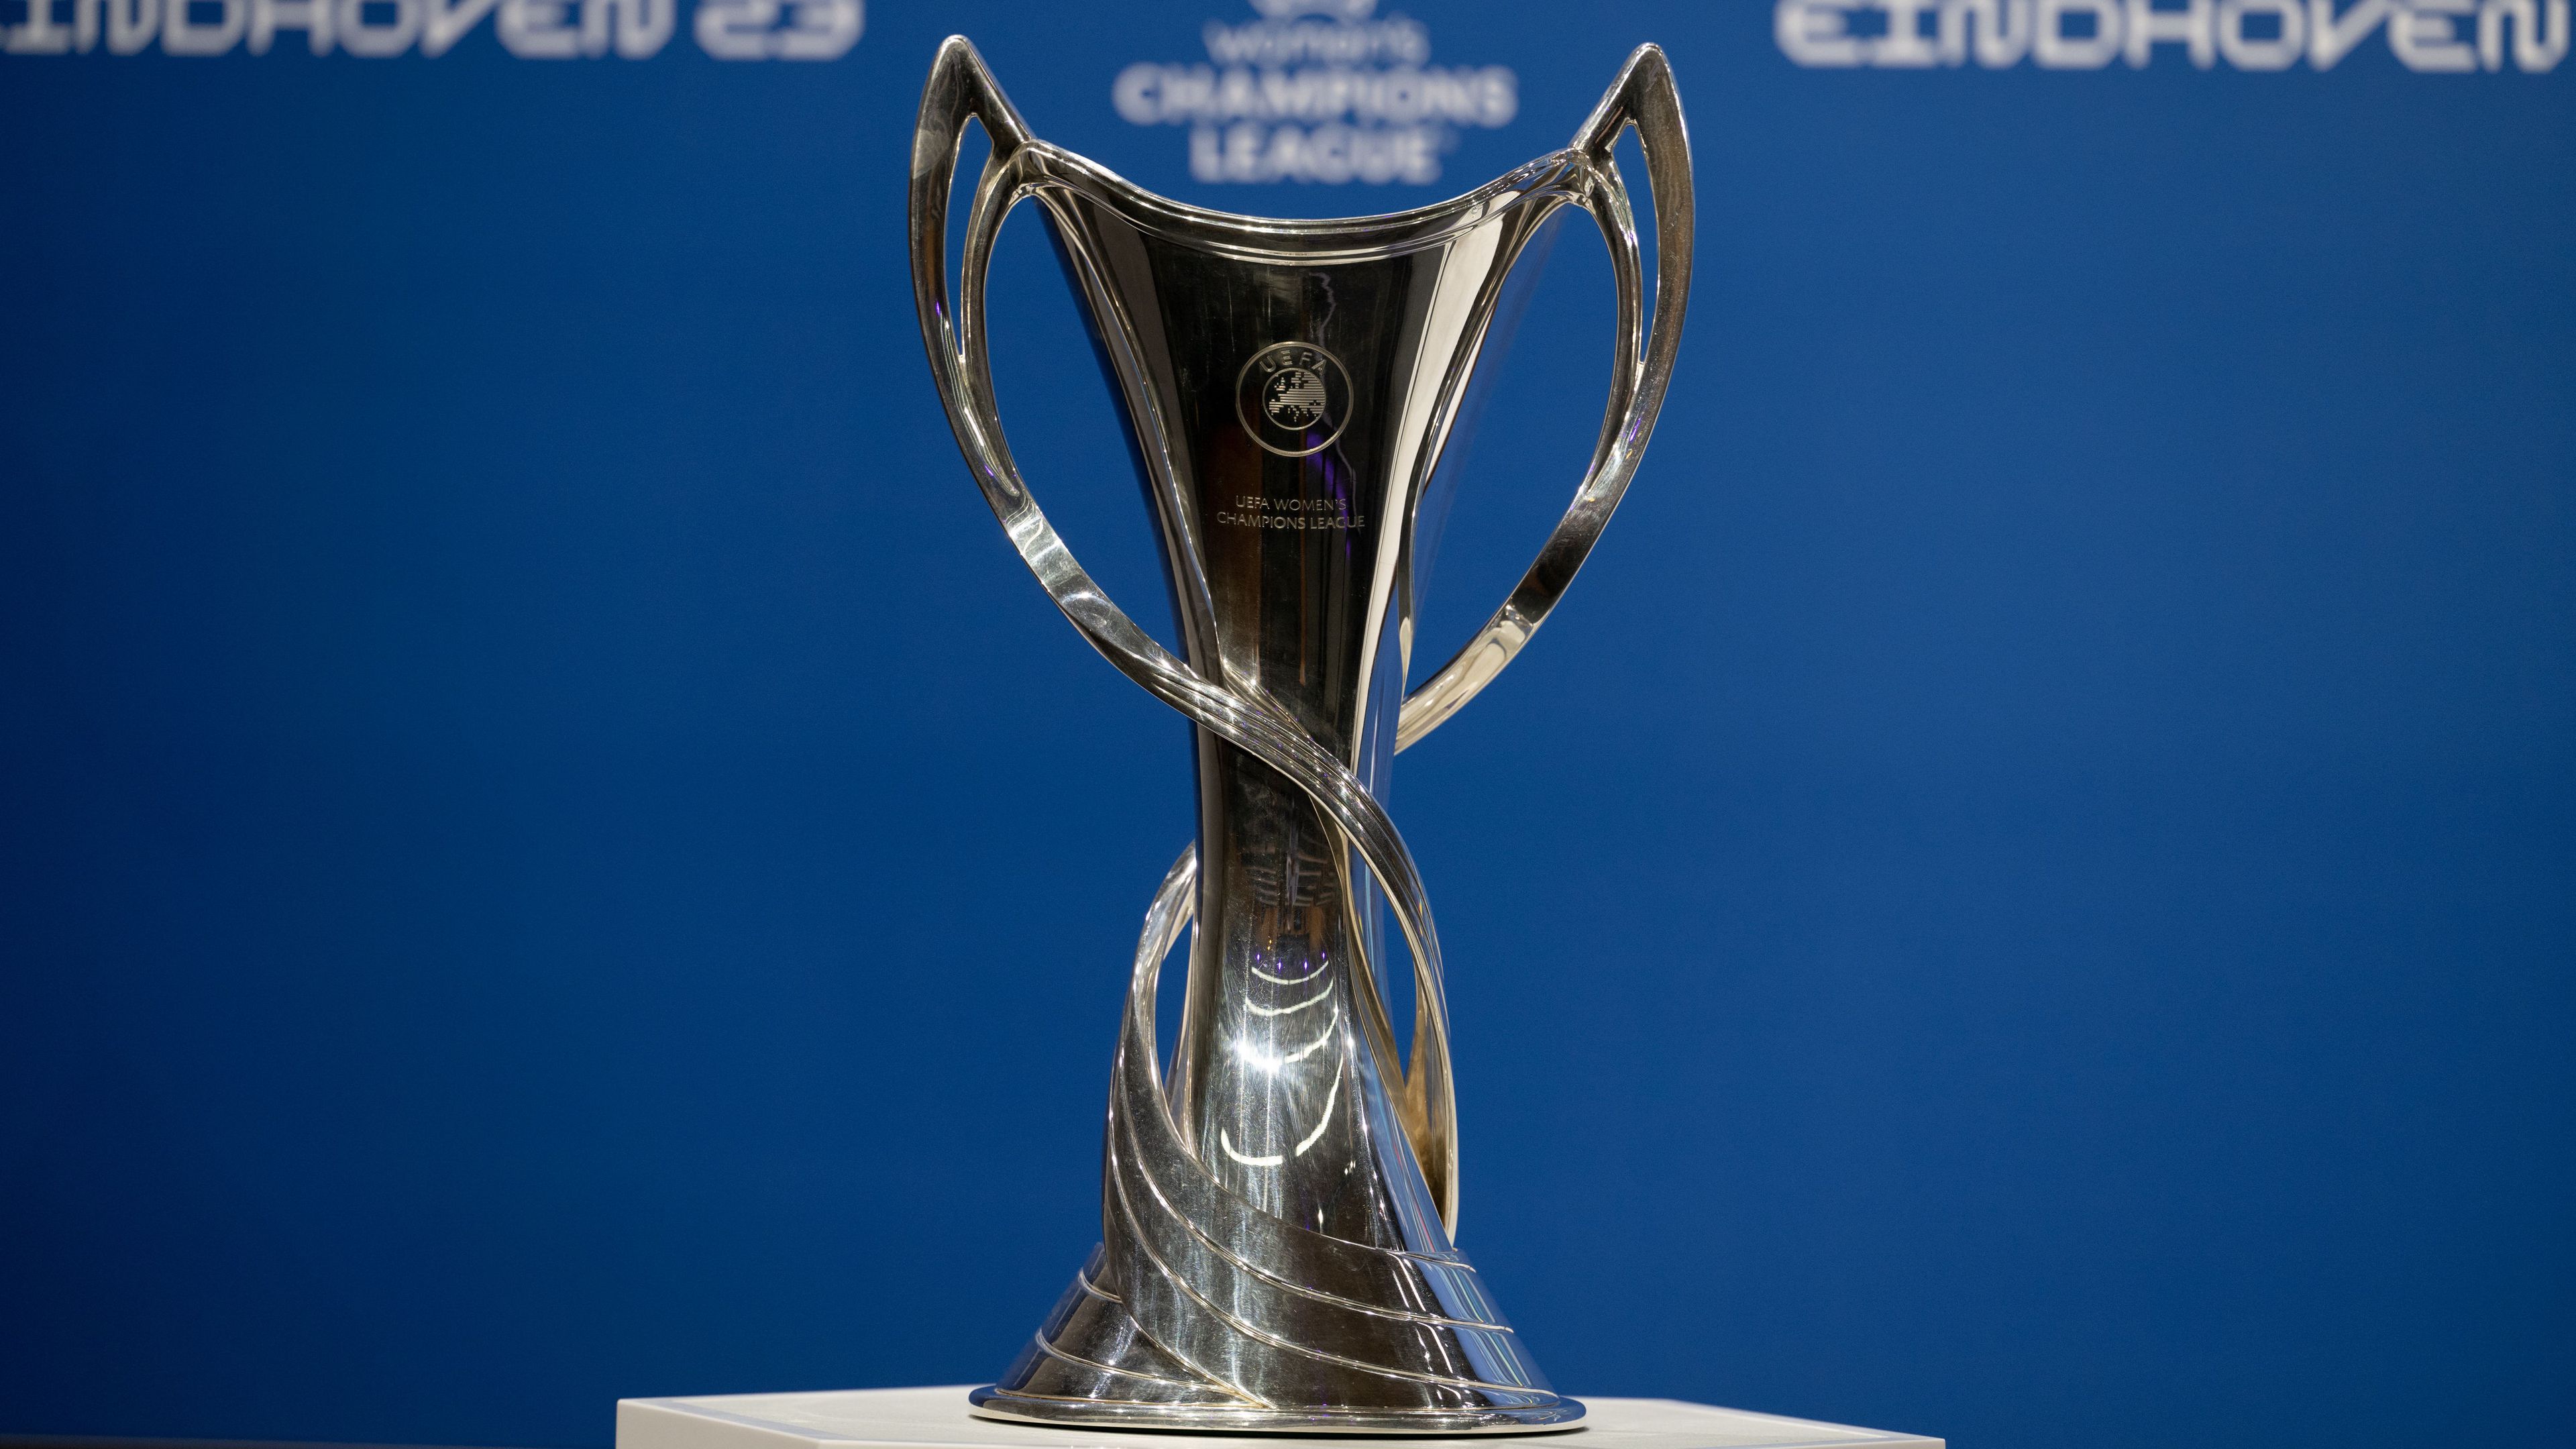 A győztes ezt a trófeát veheti majd át az eindhoveni döntő után (Fotó: Getty Images)